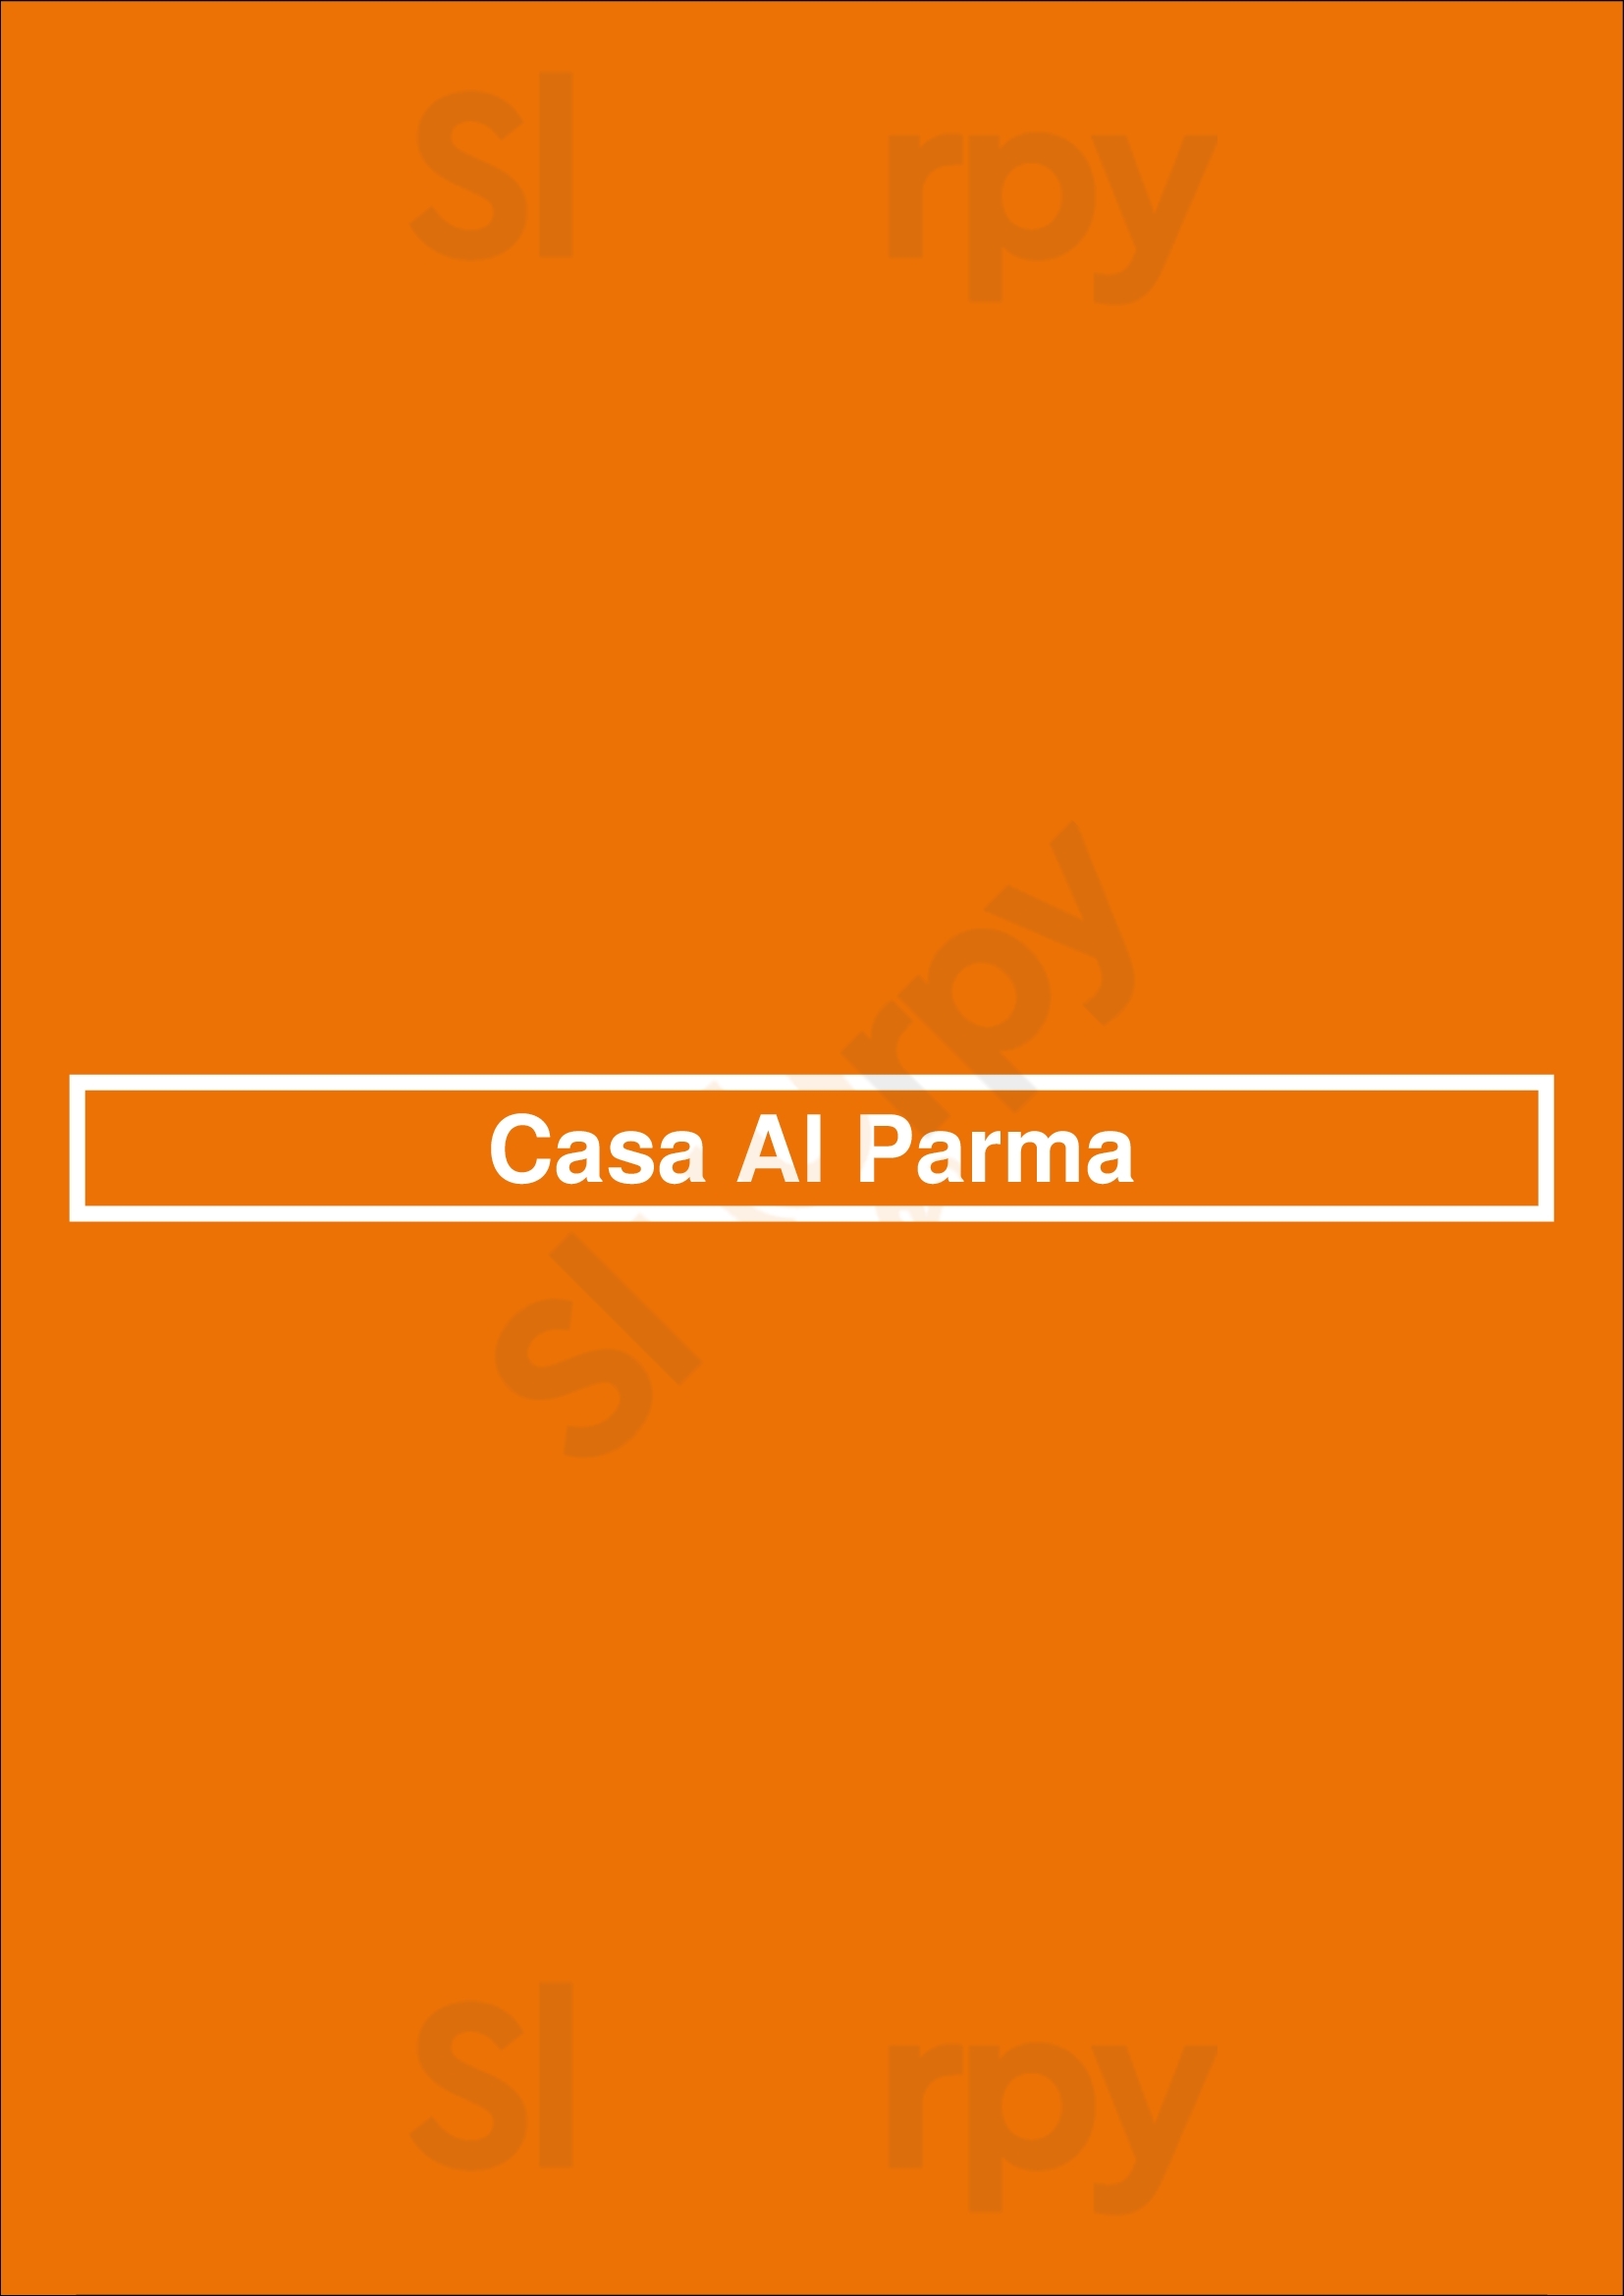 Casa Al Parma Lisboa Menu - 1